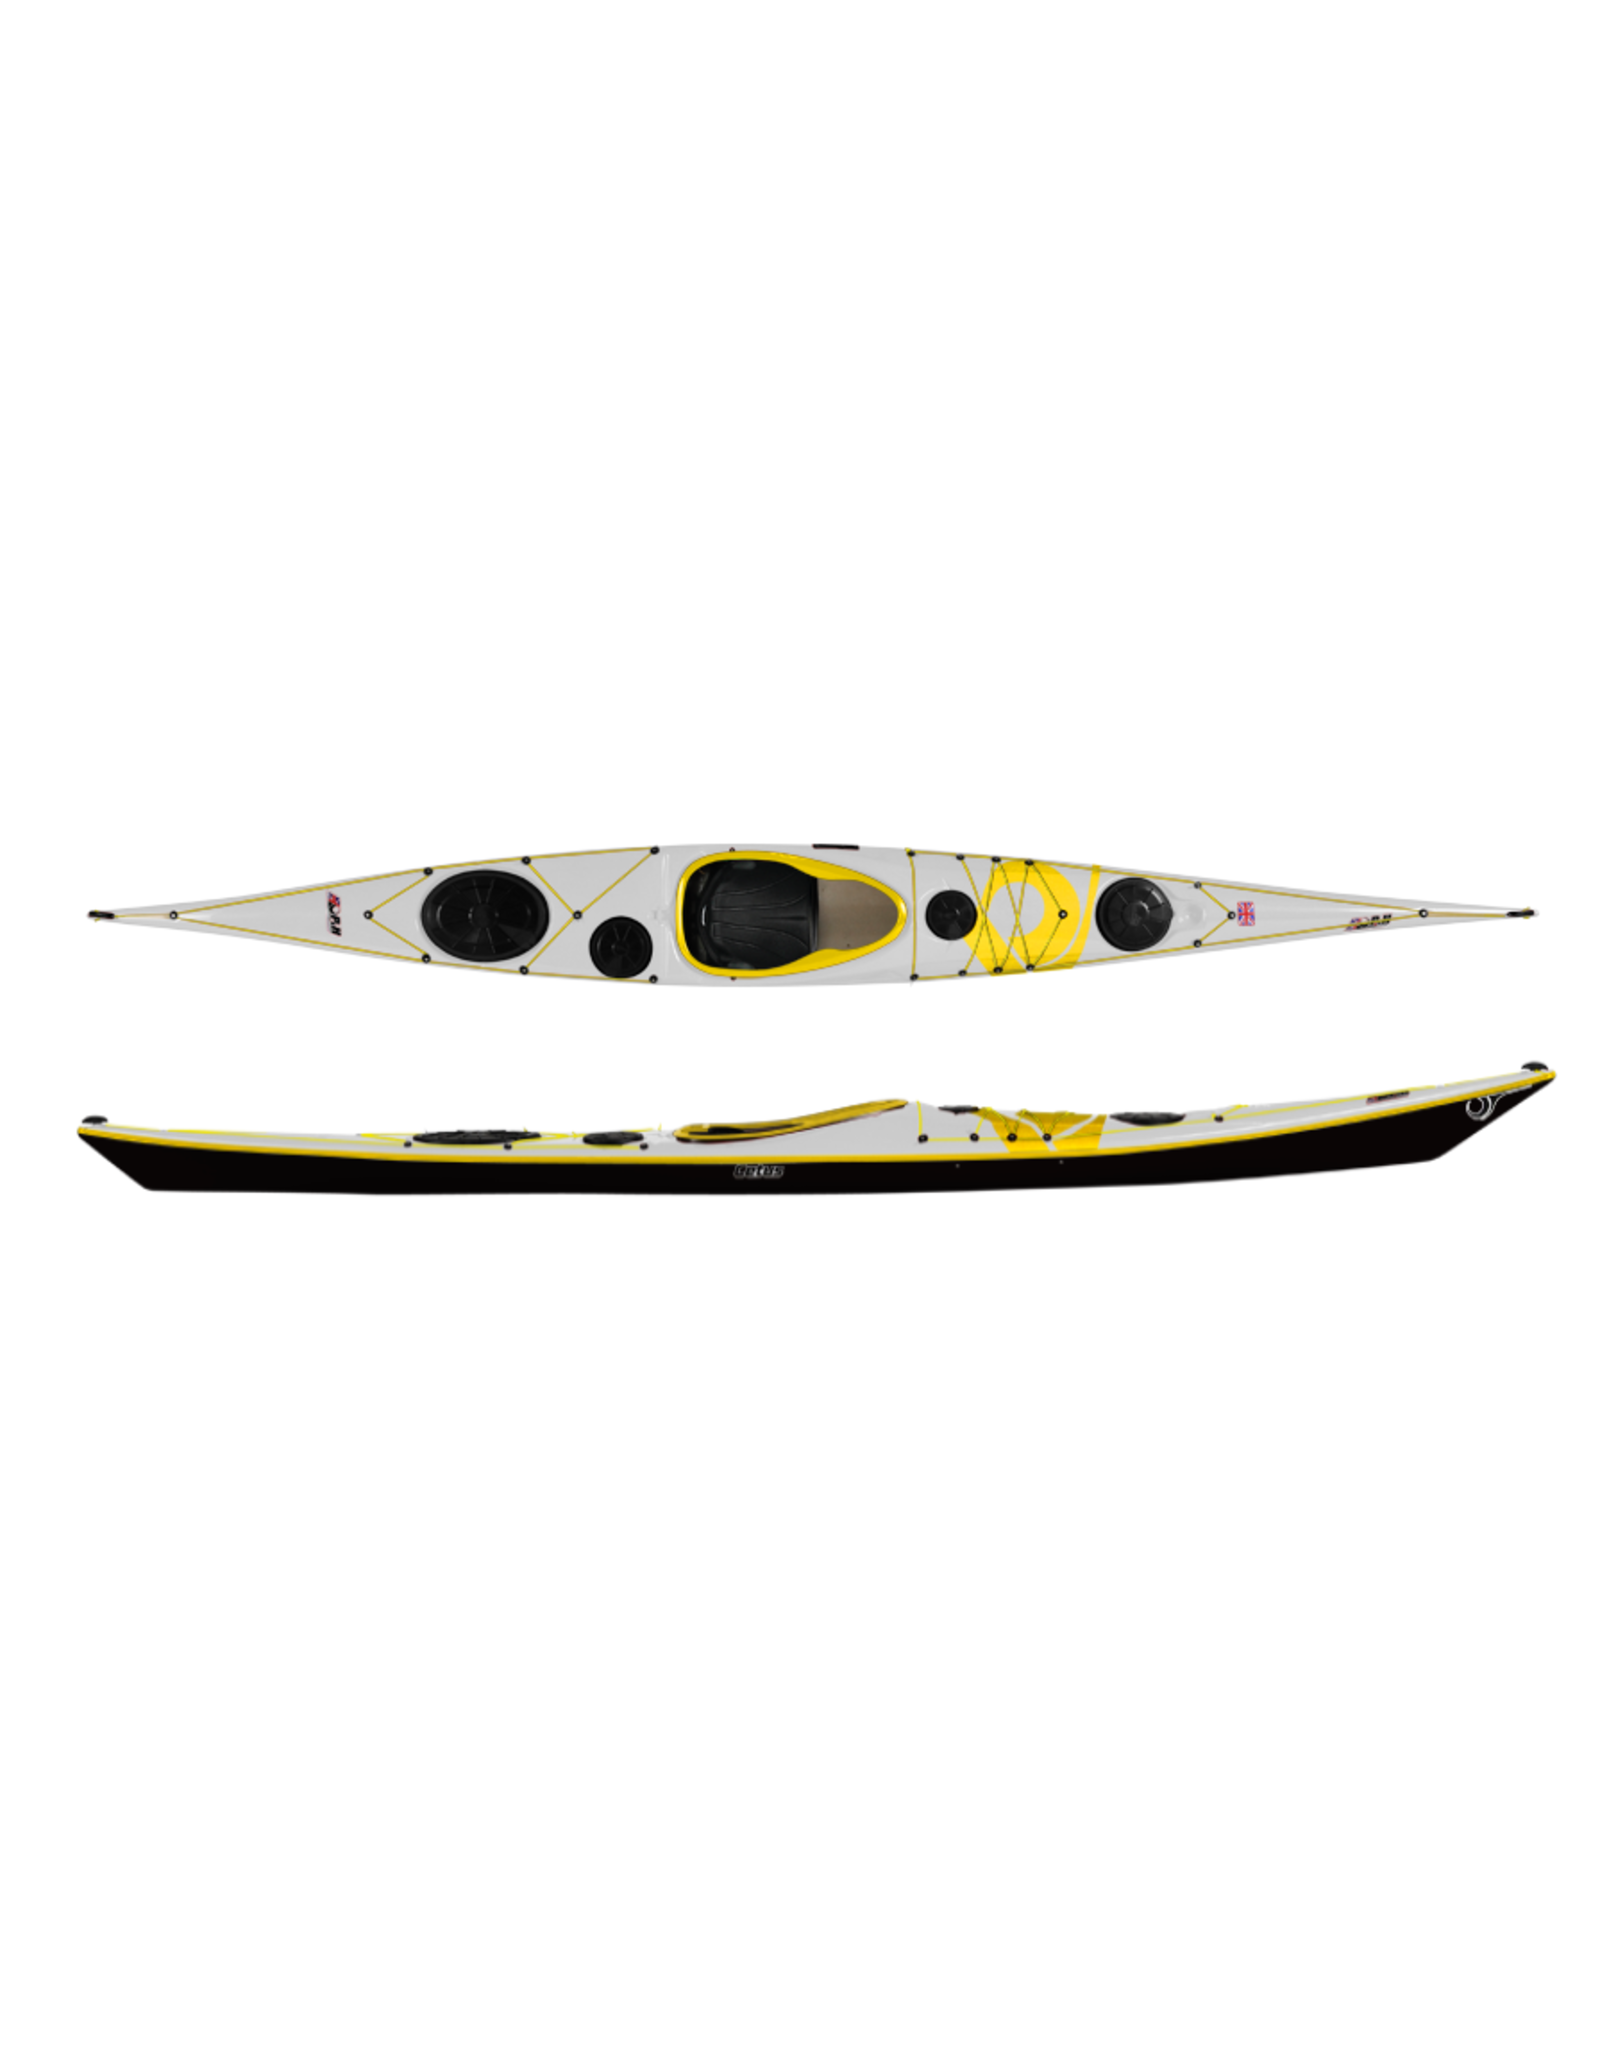 P&H Custom Sea Kayaks P&H kayak Cetus LV Performance Kevlar/Diolen White/Black/Yellow (2022)